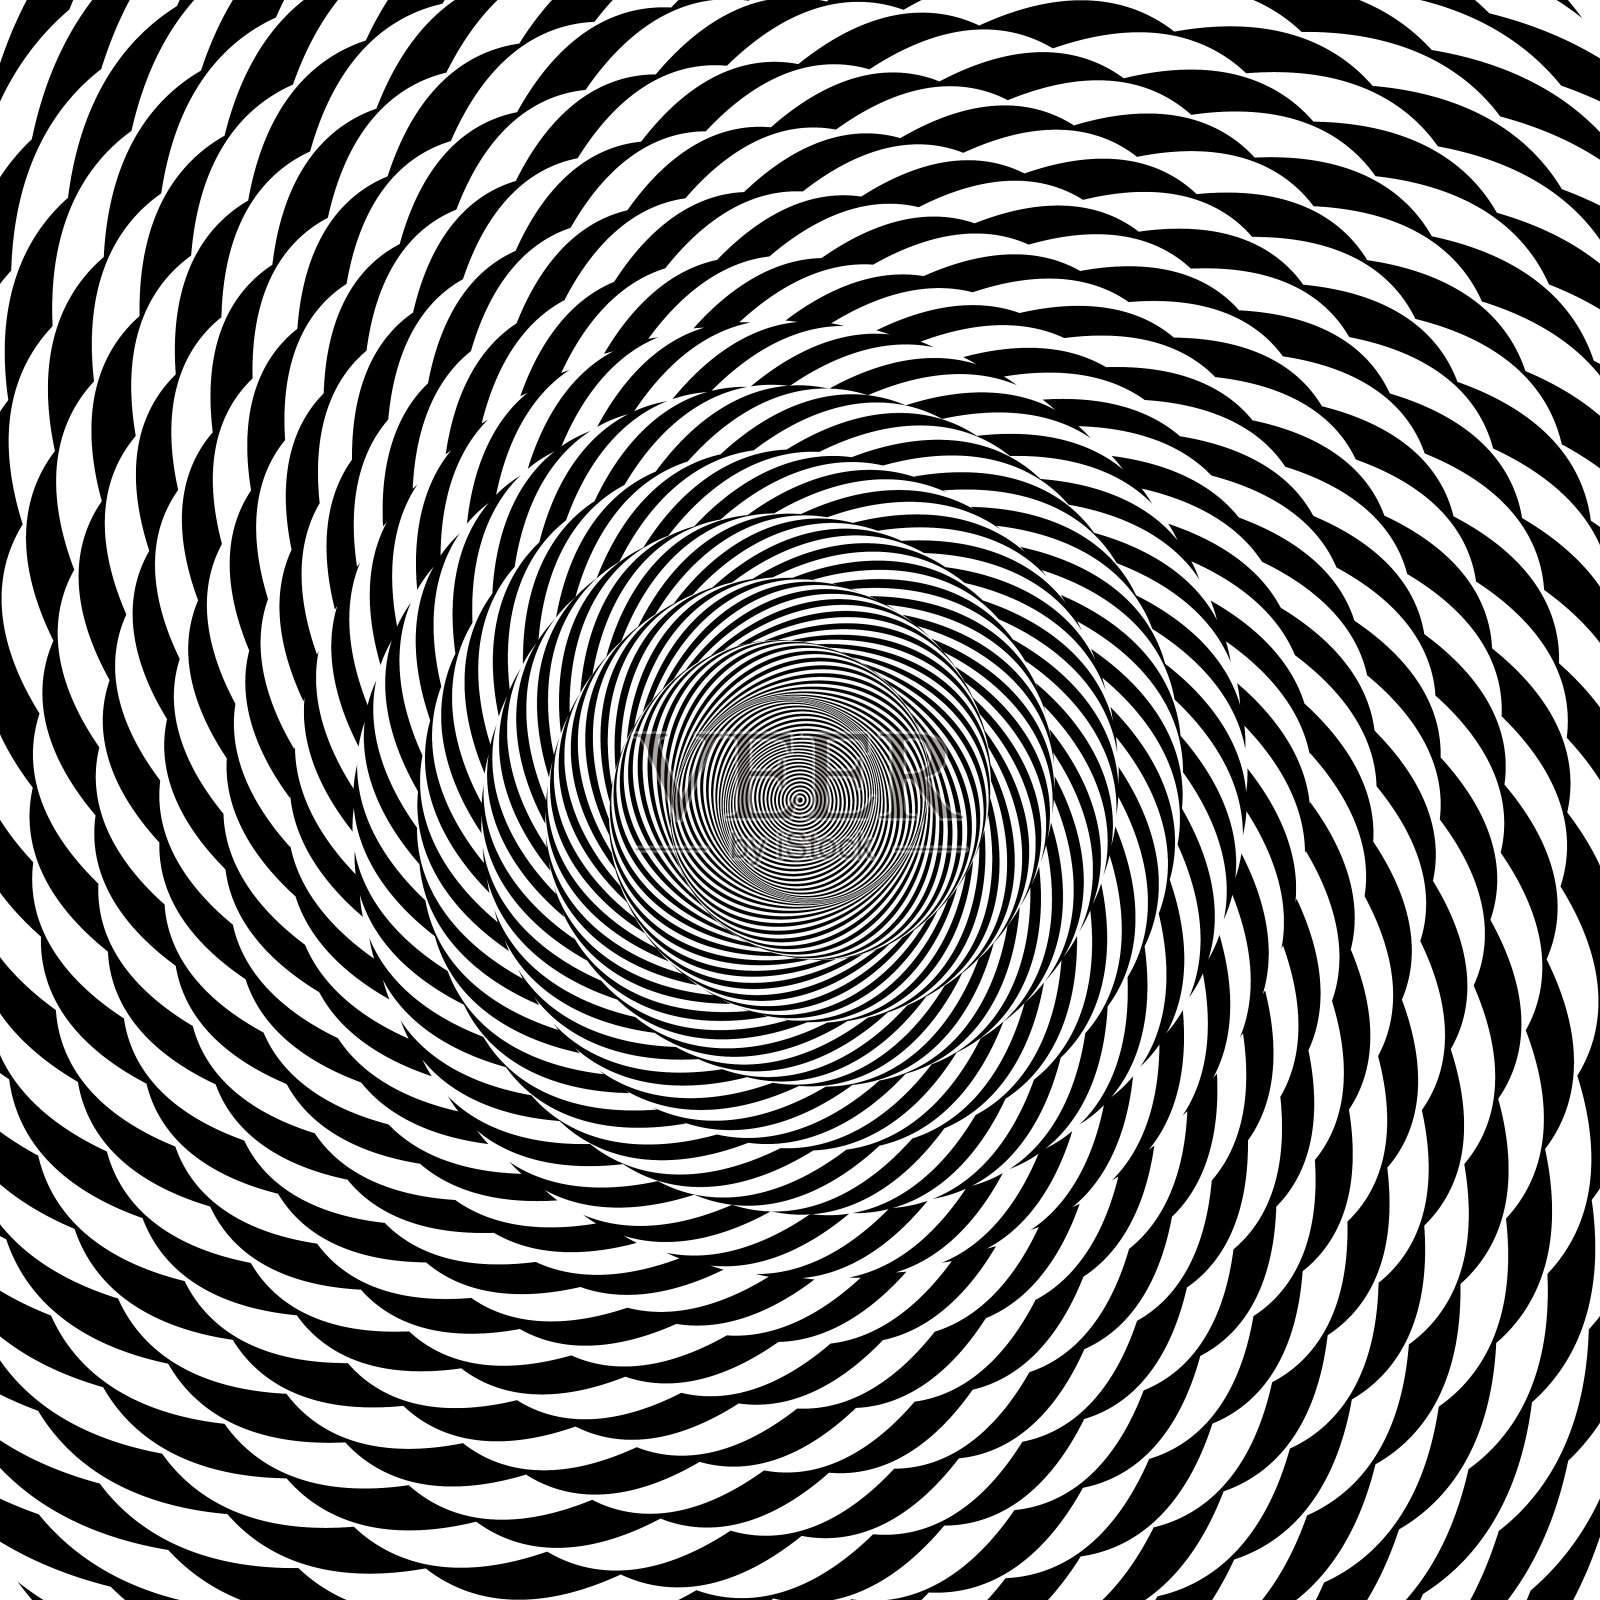 催眠圈抽象黑白光学错觉向量螺旋漩涡图案背景插画图片素材_ID:300705924-Veer图库